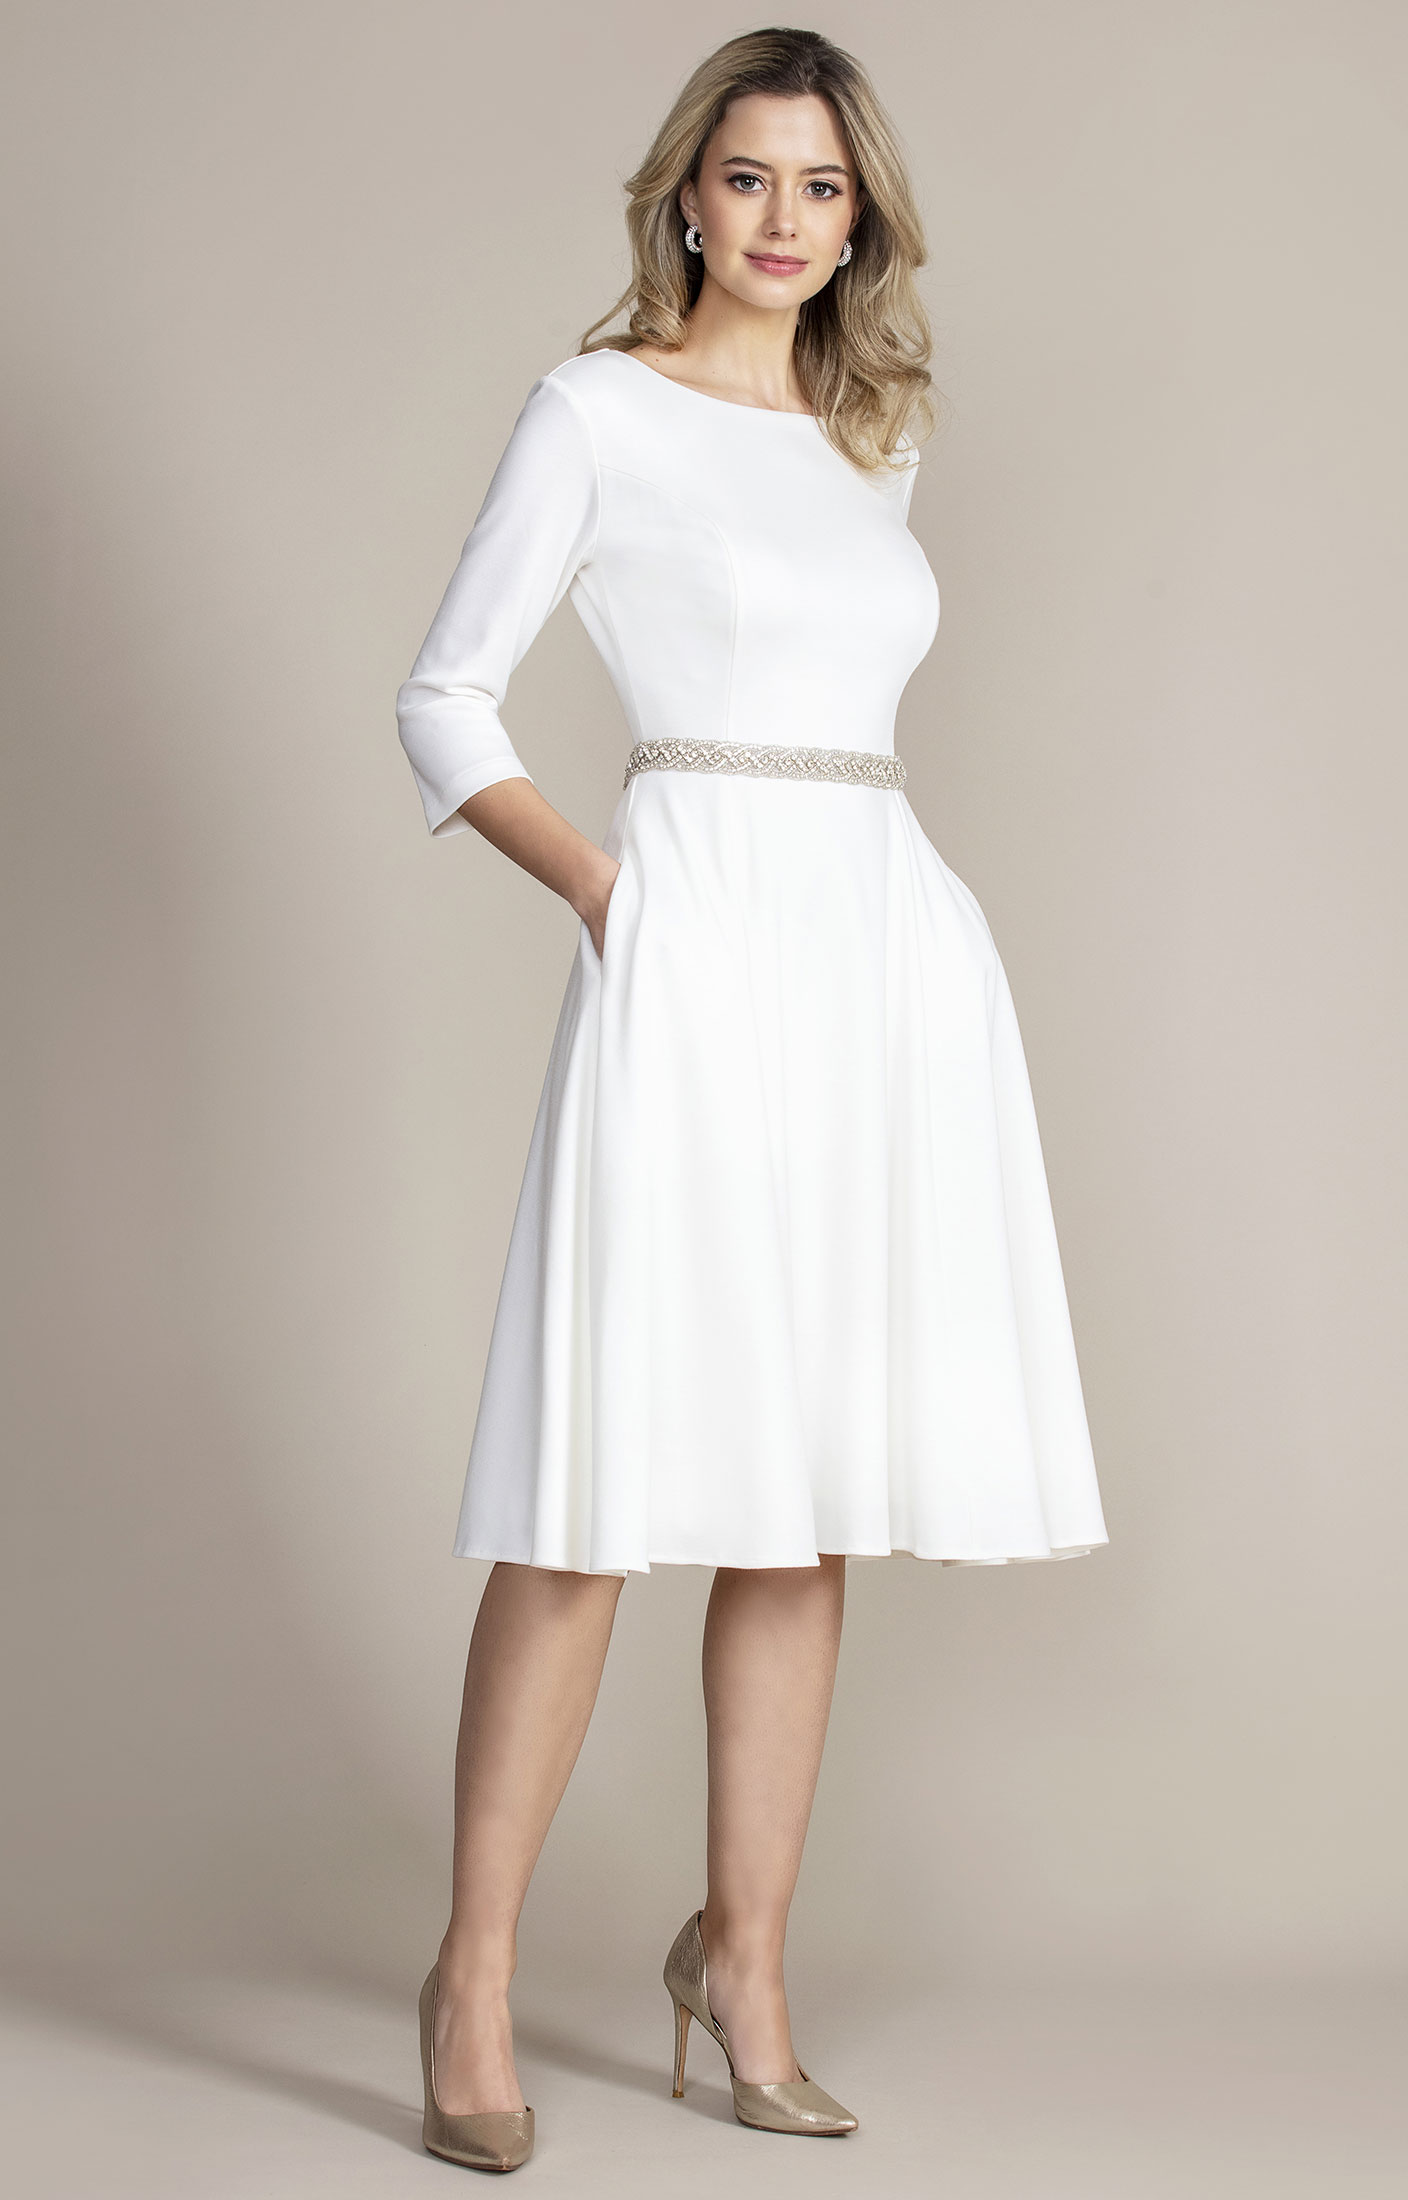 white mid length dress